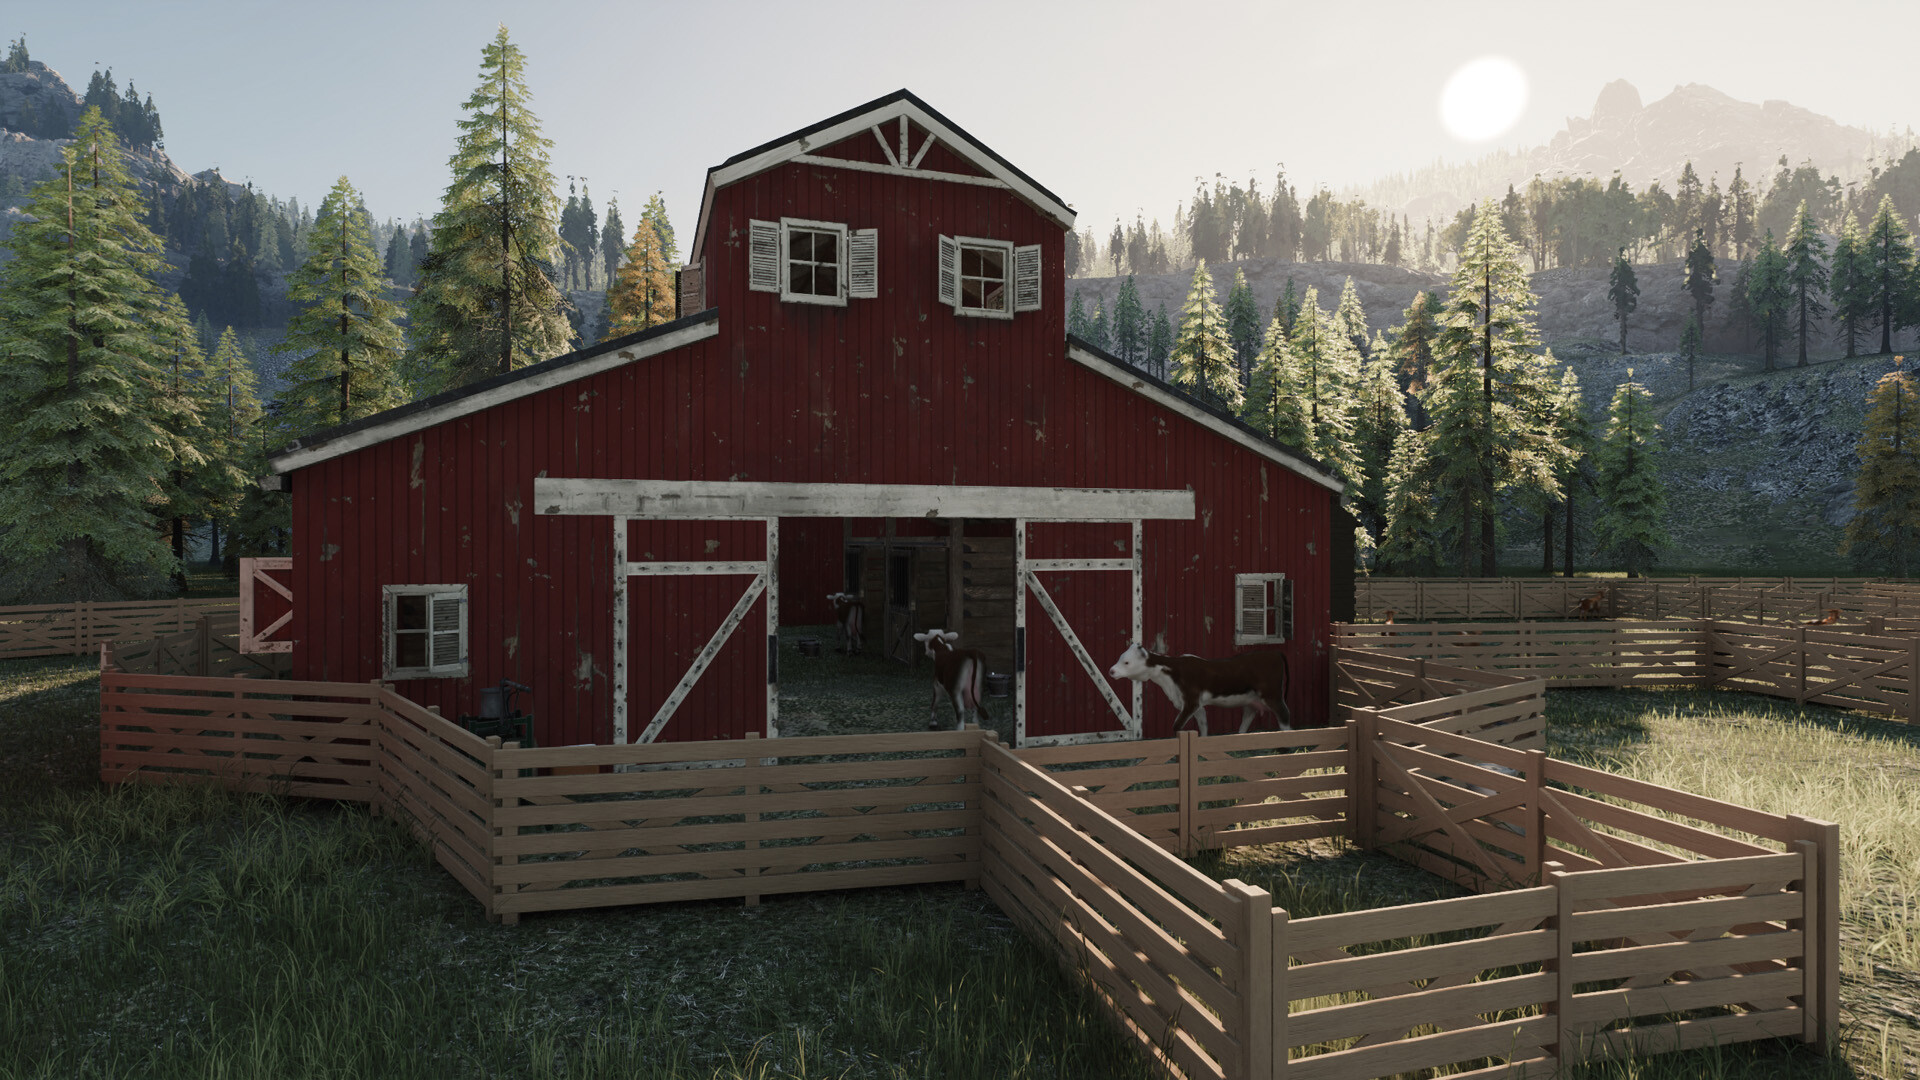 Ranch Simulator Pt 2 lets build a house 